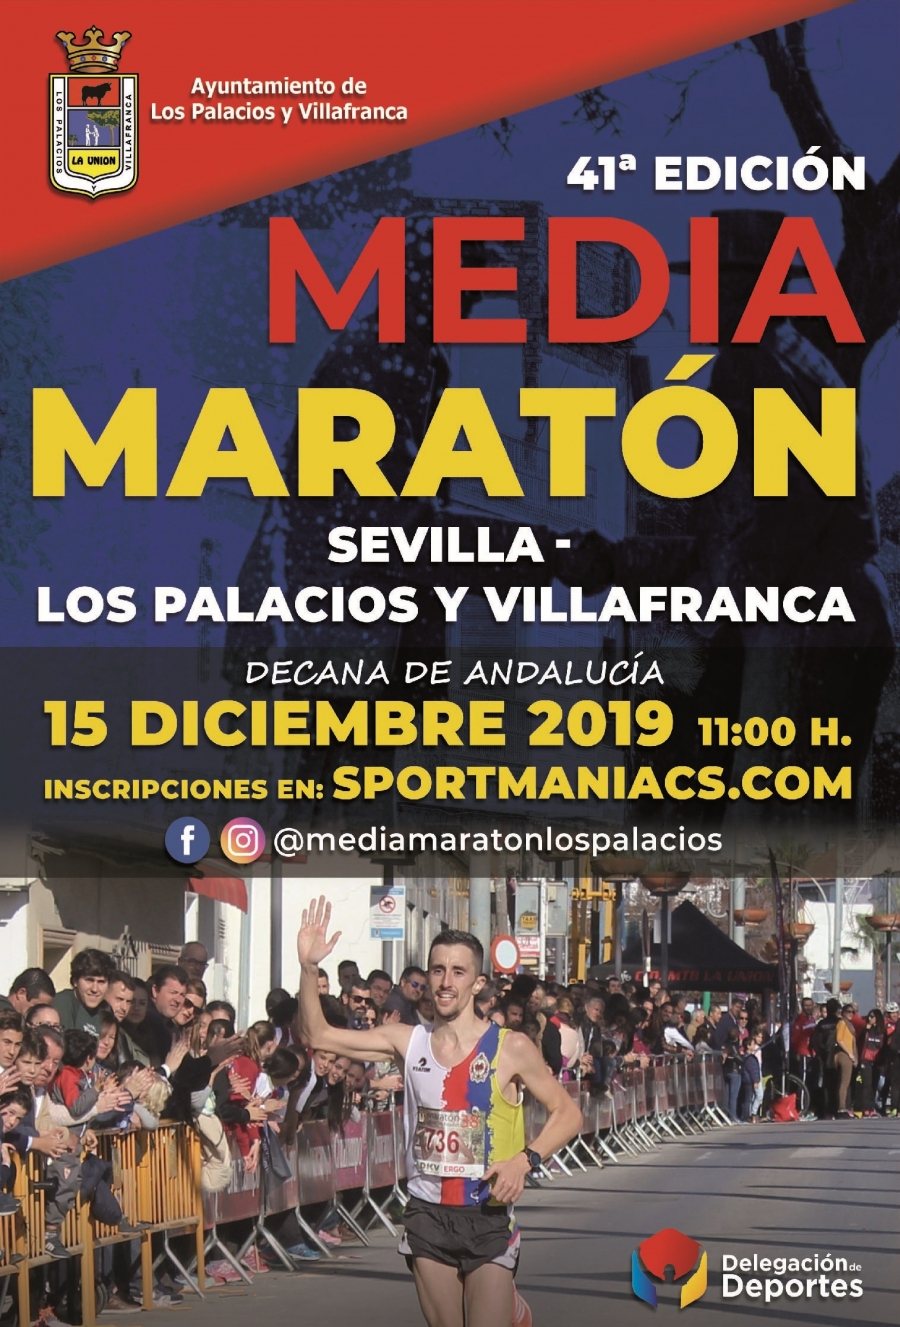 Abiertas inscripciones 41ª Edición Media Maratón Sevilla-Los Palacios y Villafranca 2019